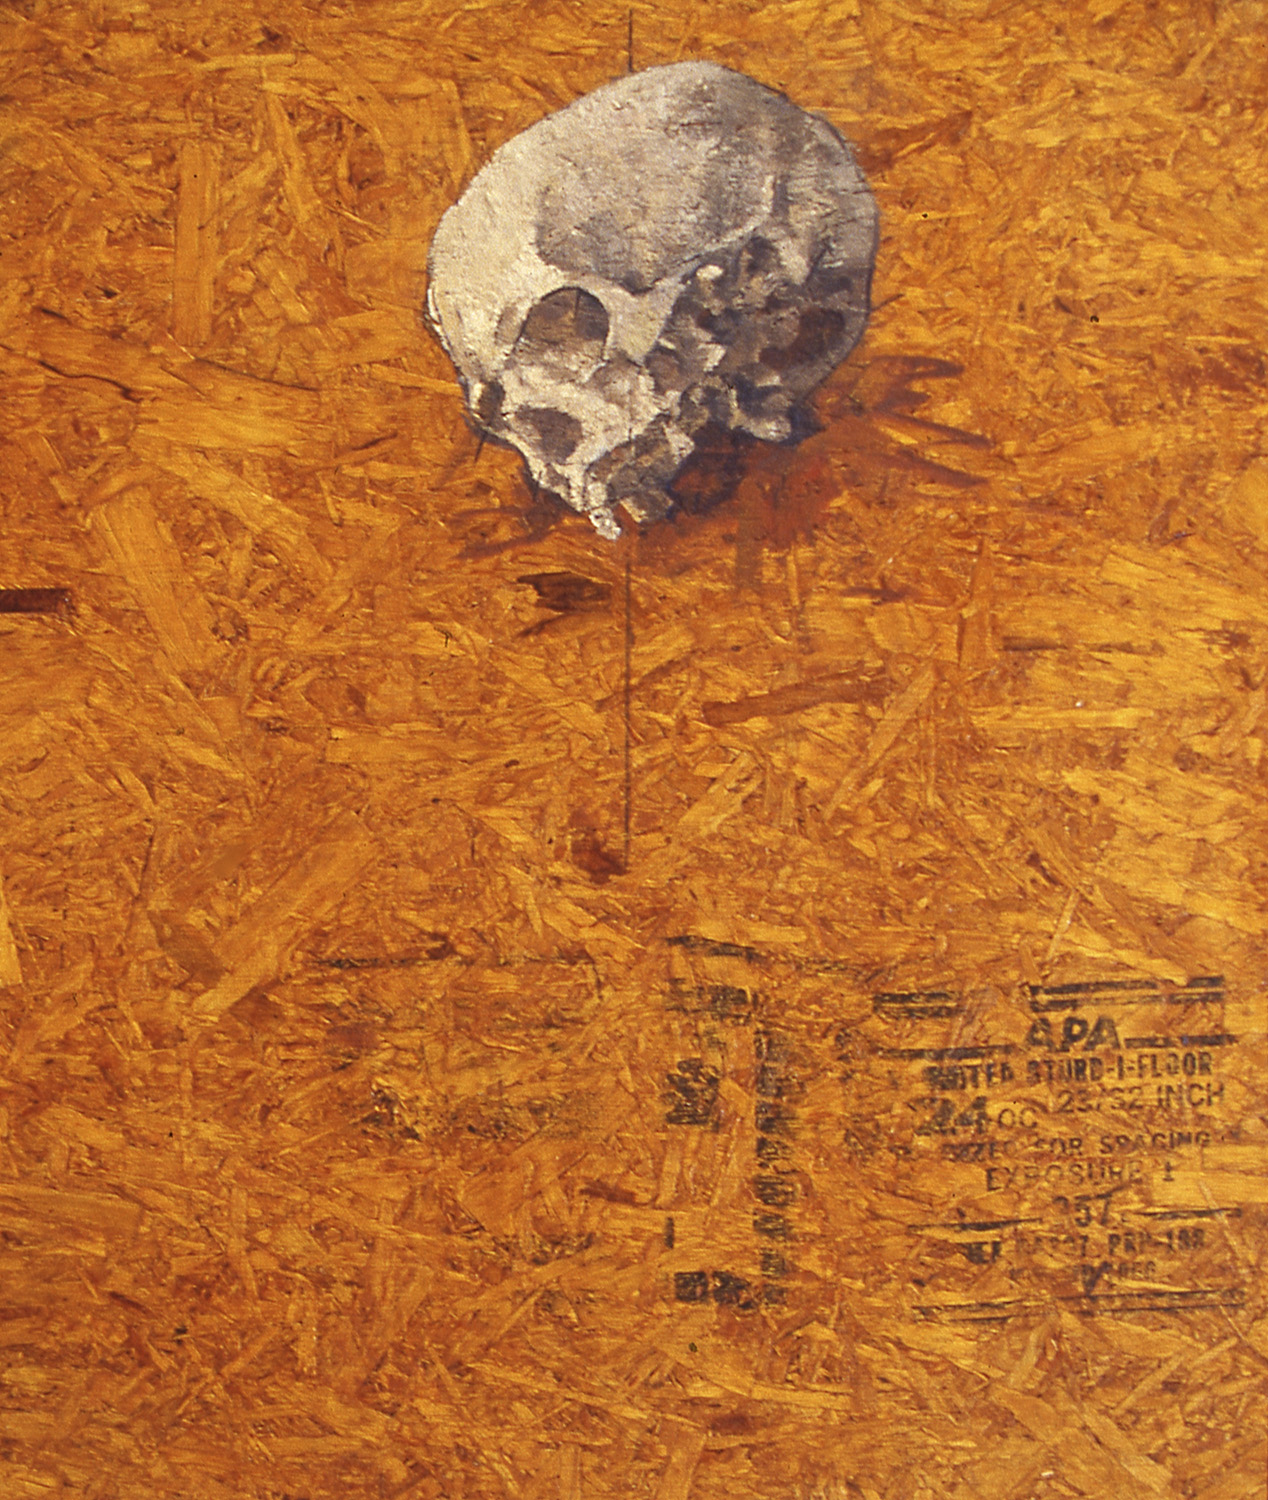 skull by Frederick Ortner (larger)